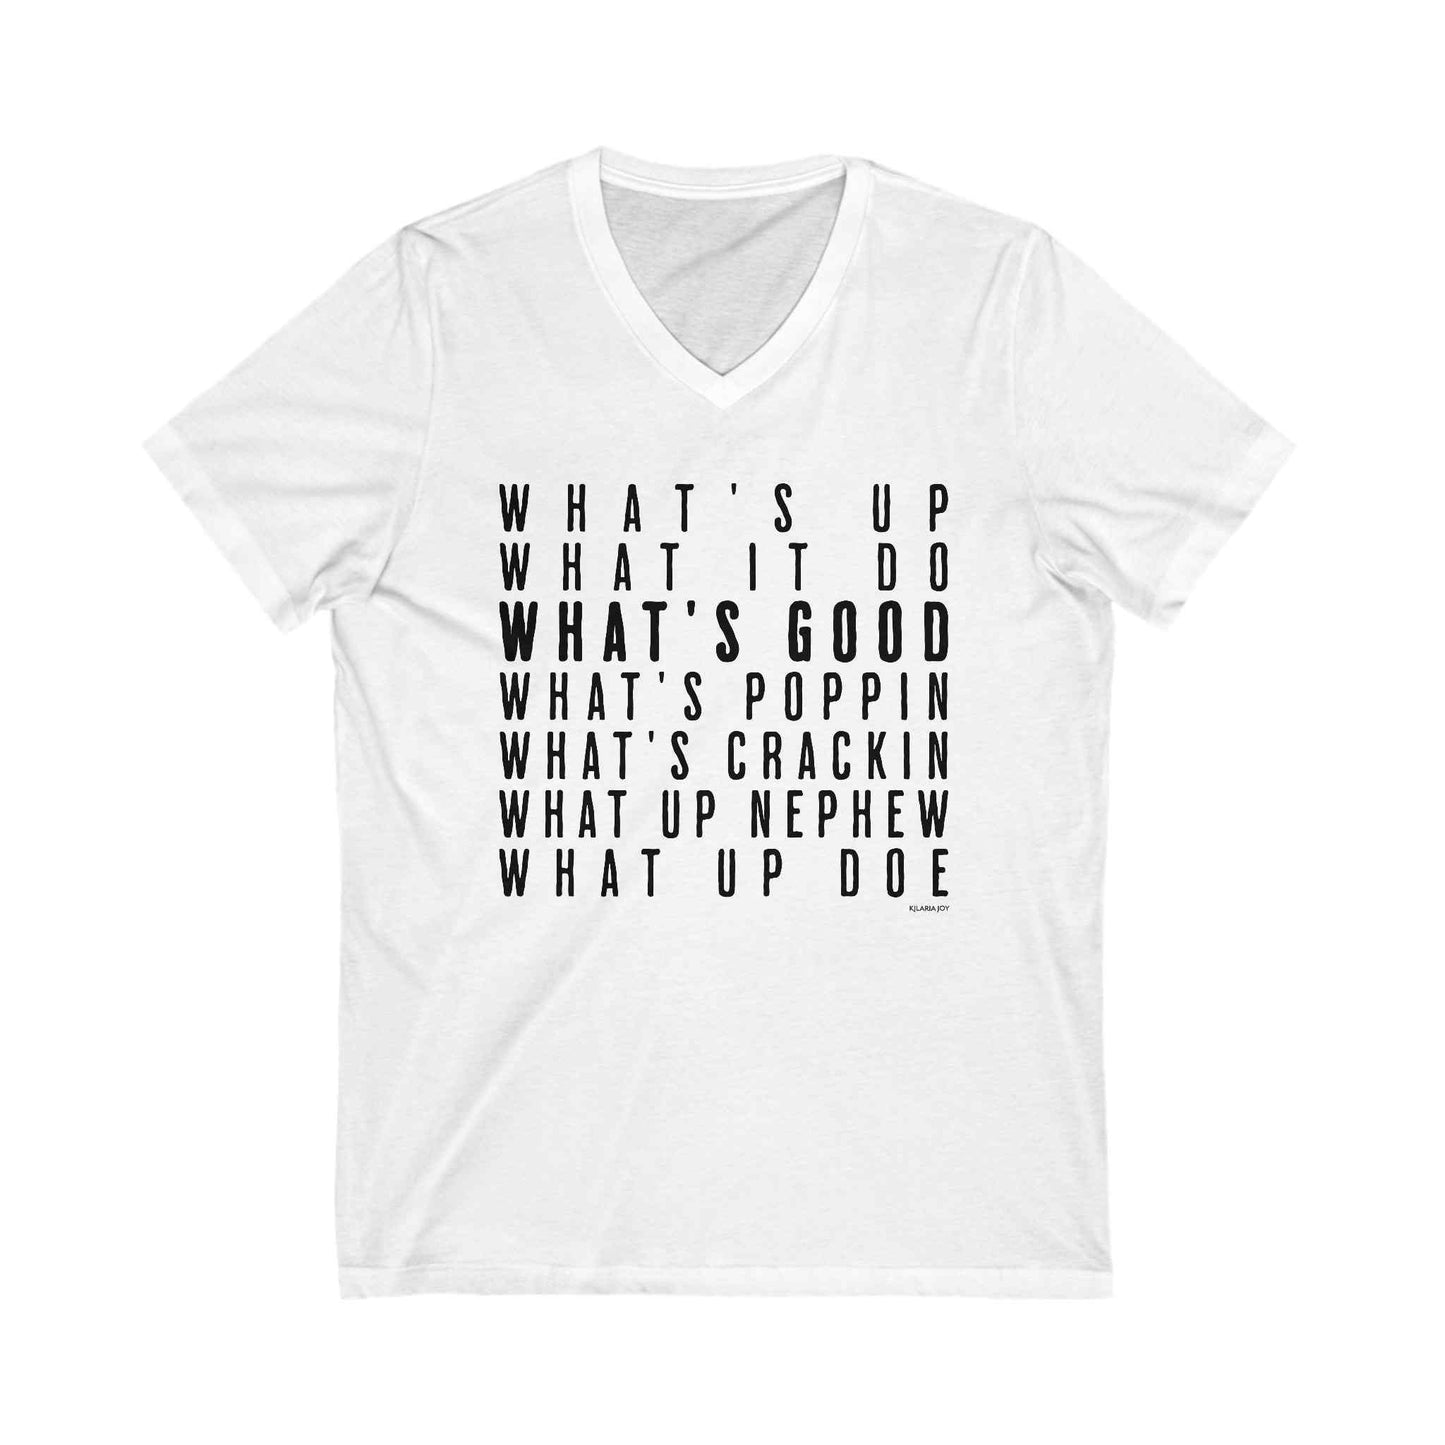 What's Good Women's Premium V-neck T-shirt